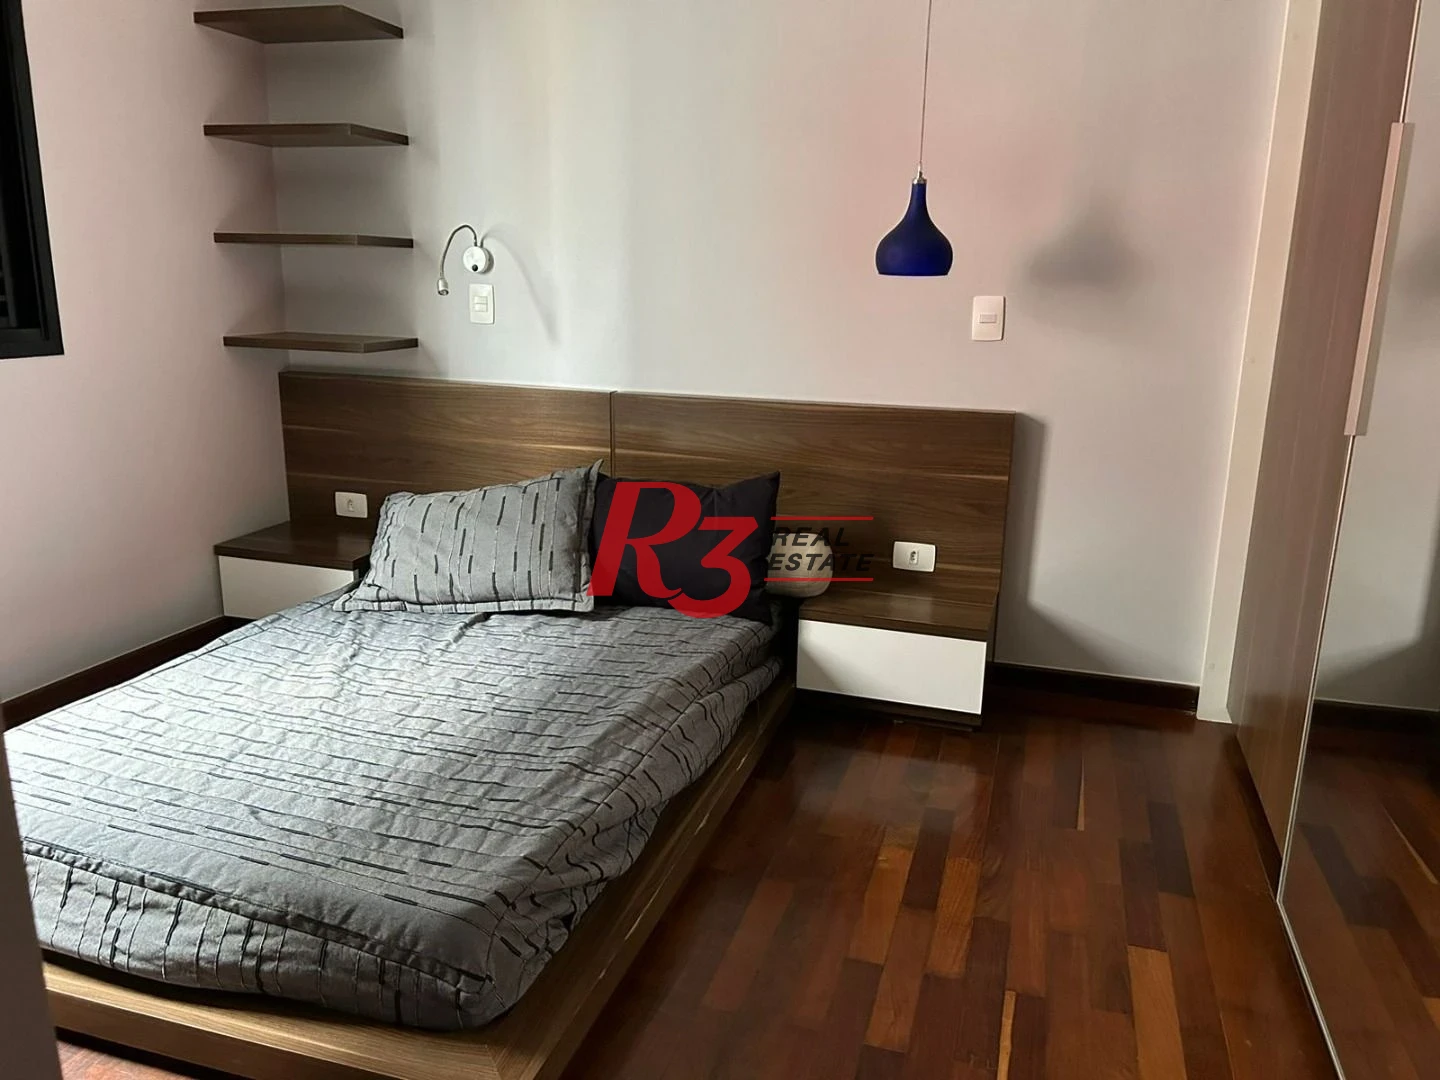 Cobertura com 4 dormitórios à venda, 422 m² por R$ 4.000.000,00 - Boqueirão - Santos/SP